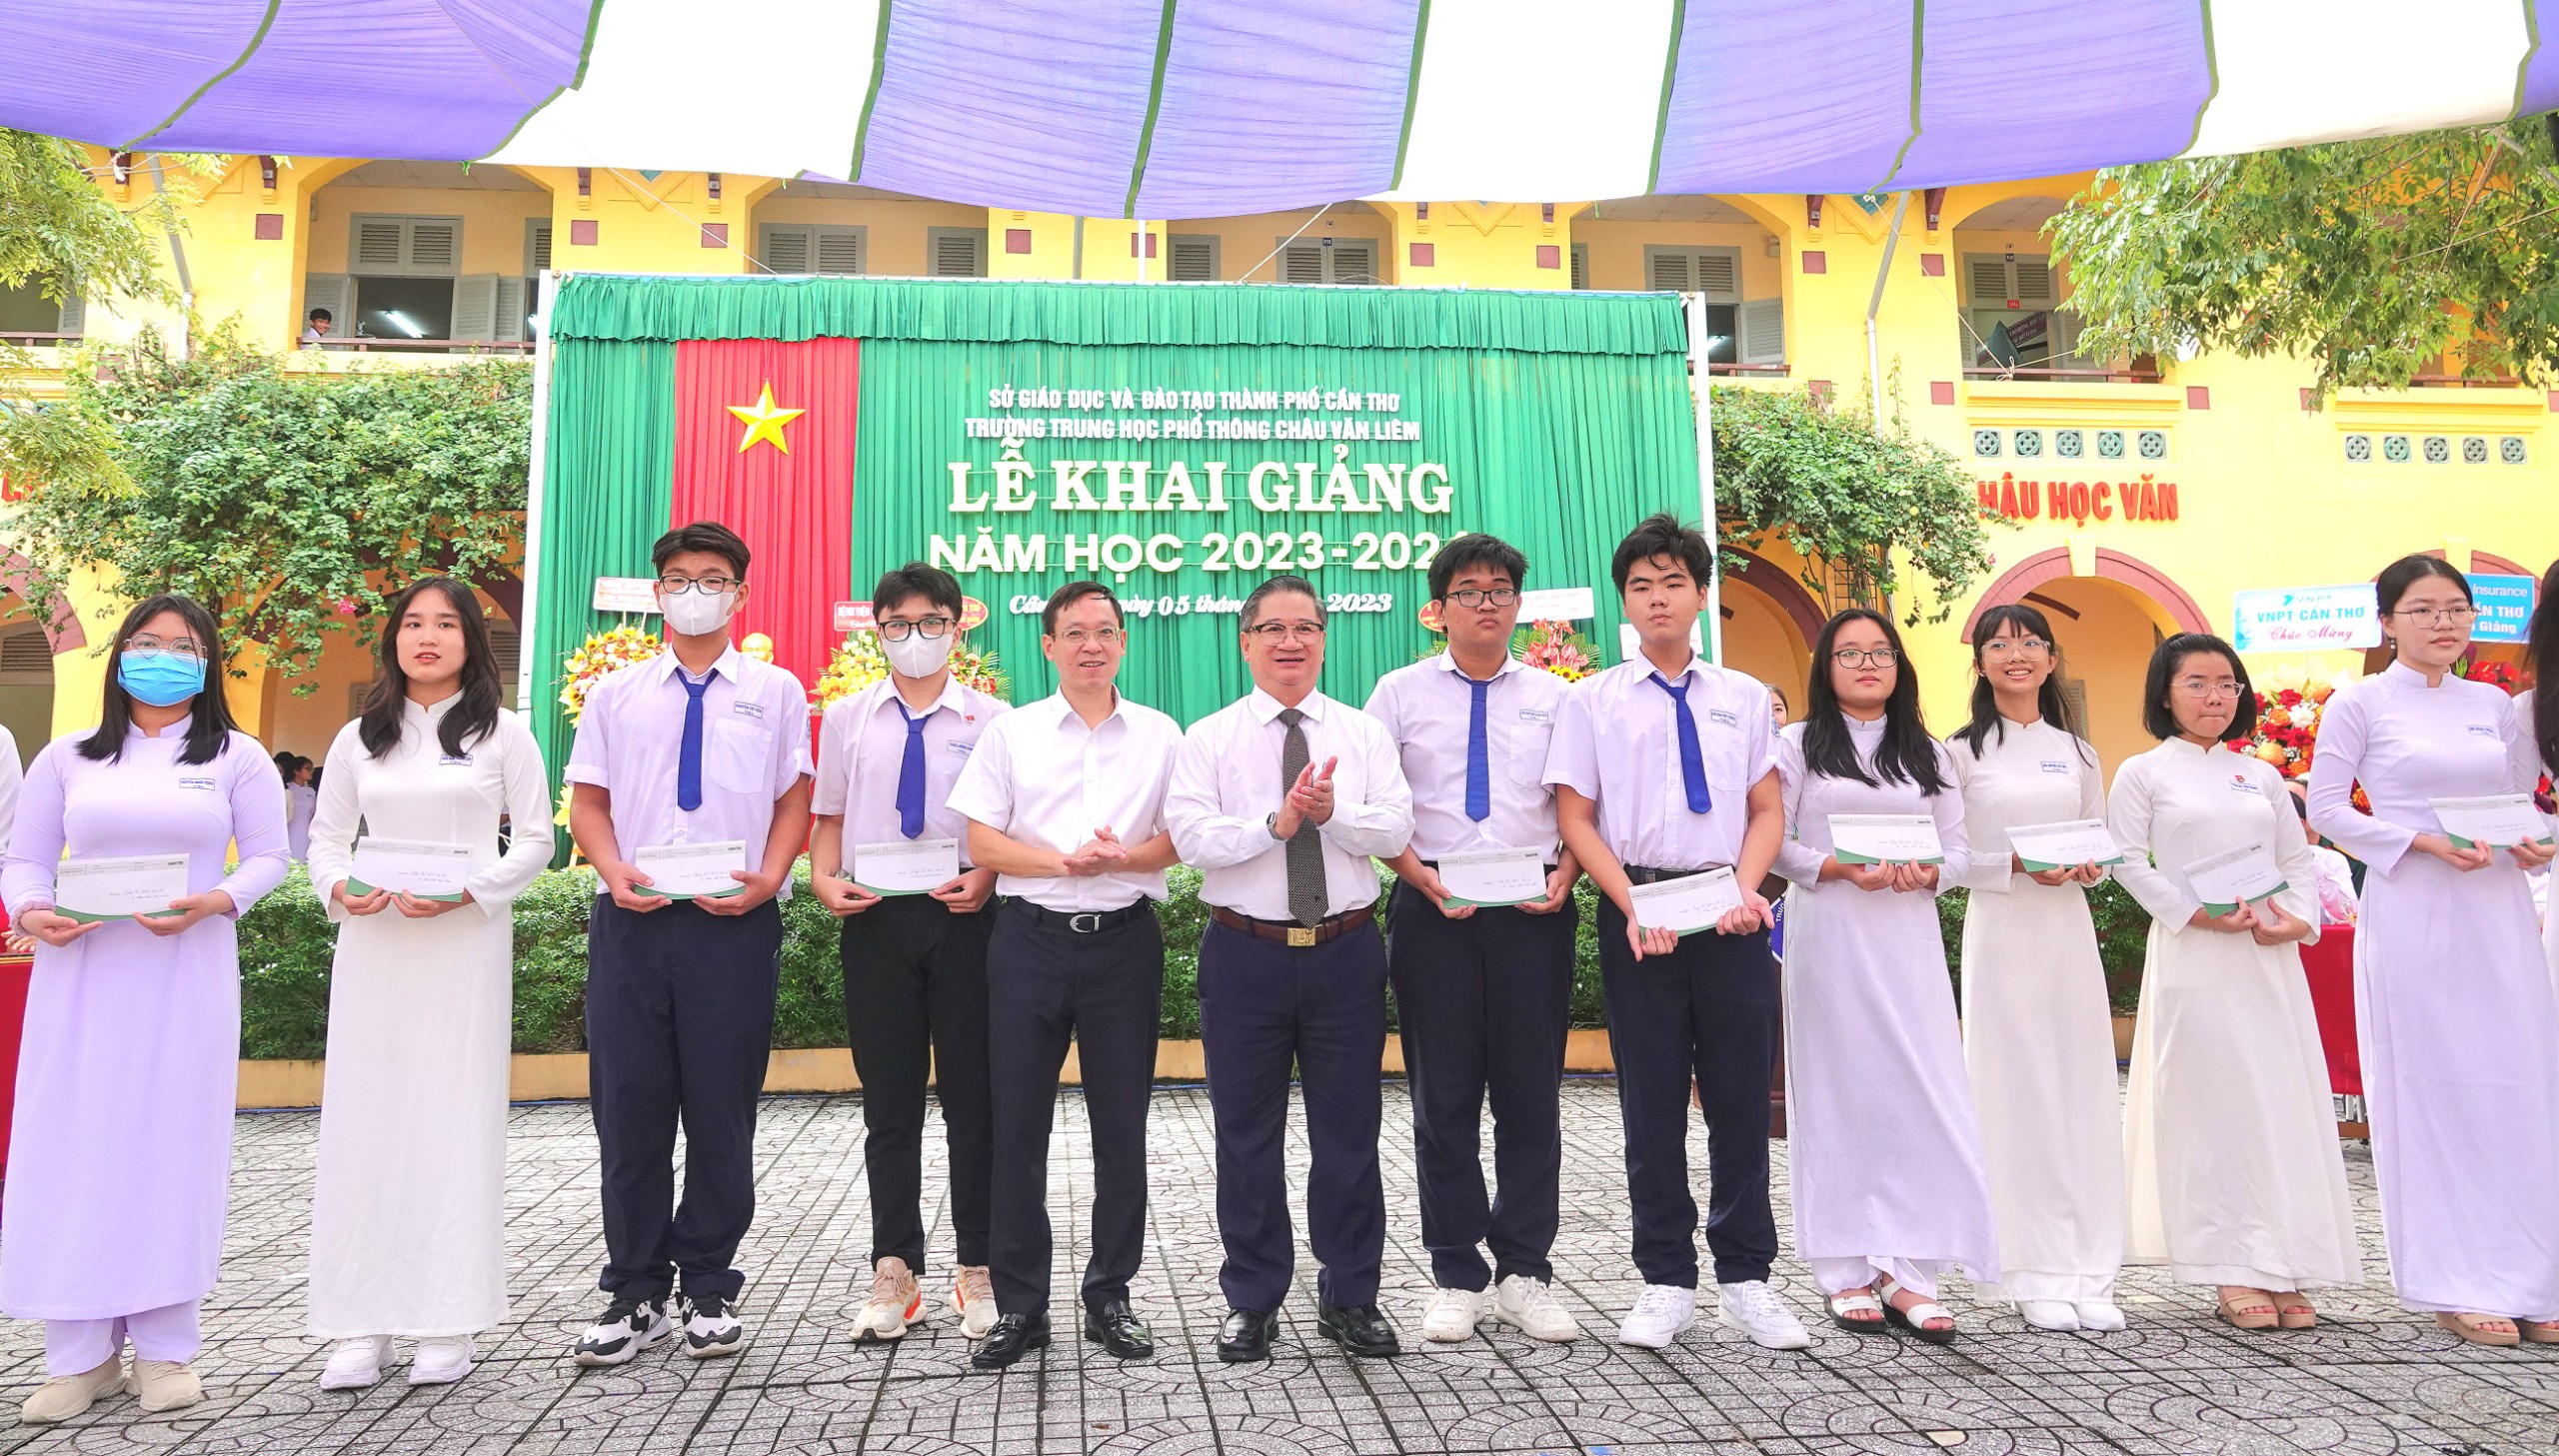 Ông Trần Việt Trường - Phó Bí thư Thành ủy, Chủ tịch UBND TP. Cần Thơ trao tặng quà cho các em học sinh Trường THPT Châu Văn Liêm.